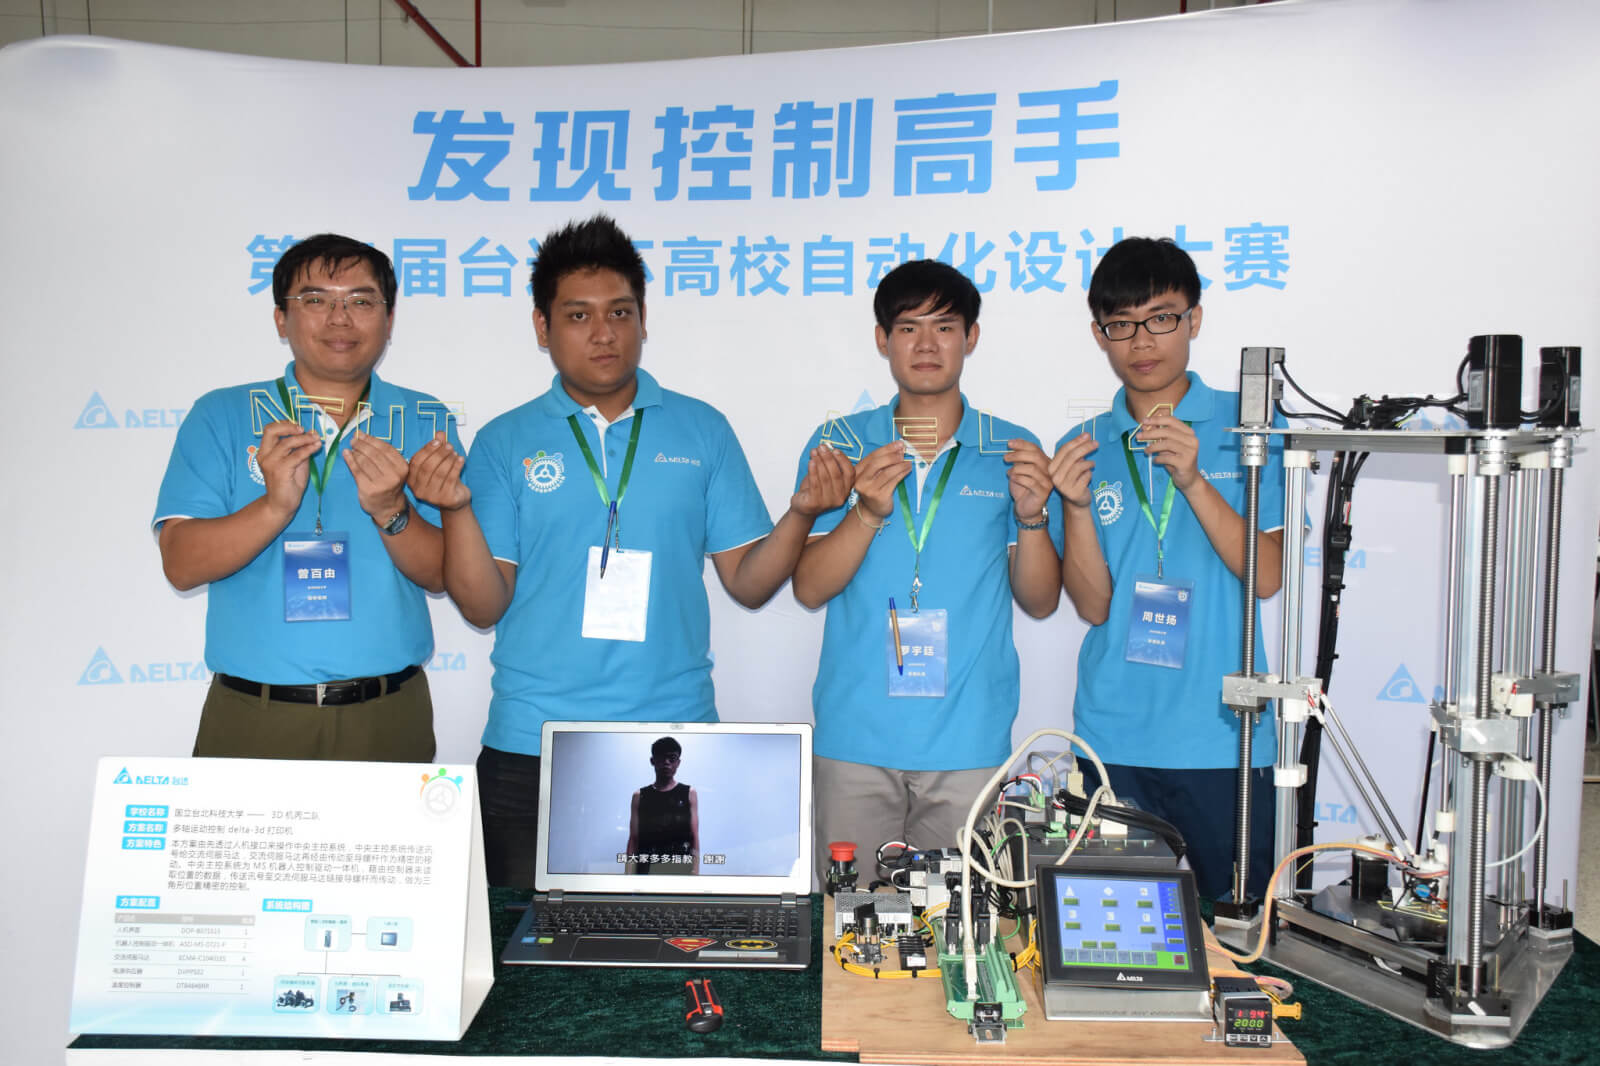 臺北科大3D印表機團隊獲台達盃首獎